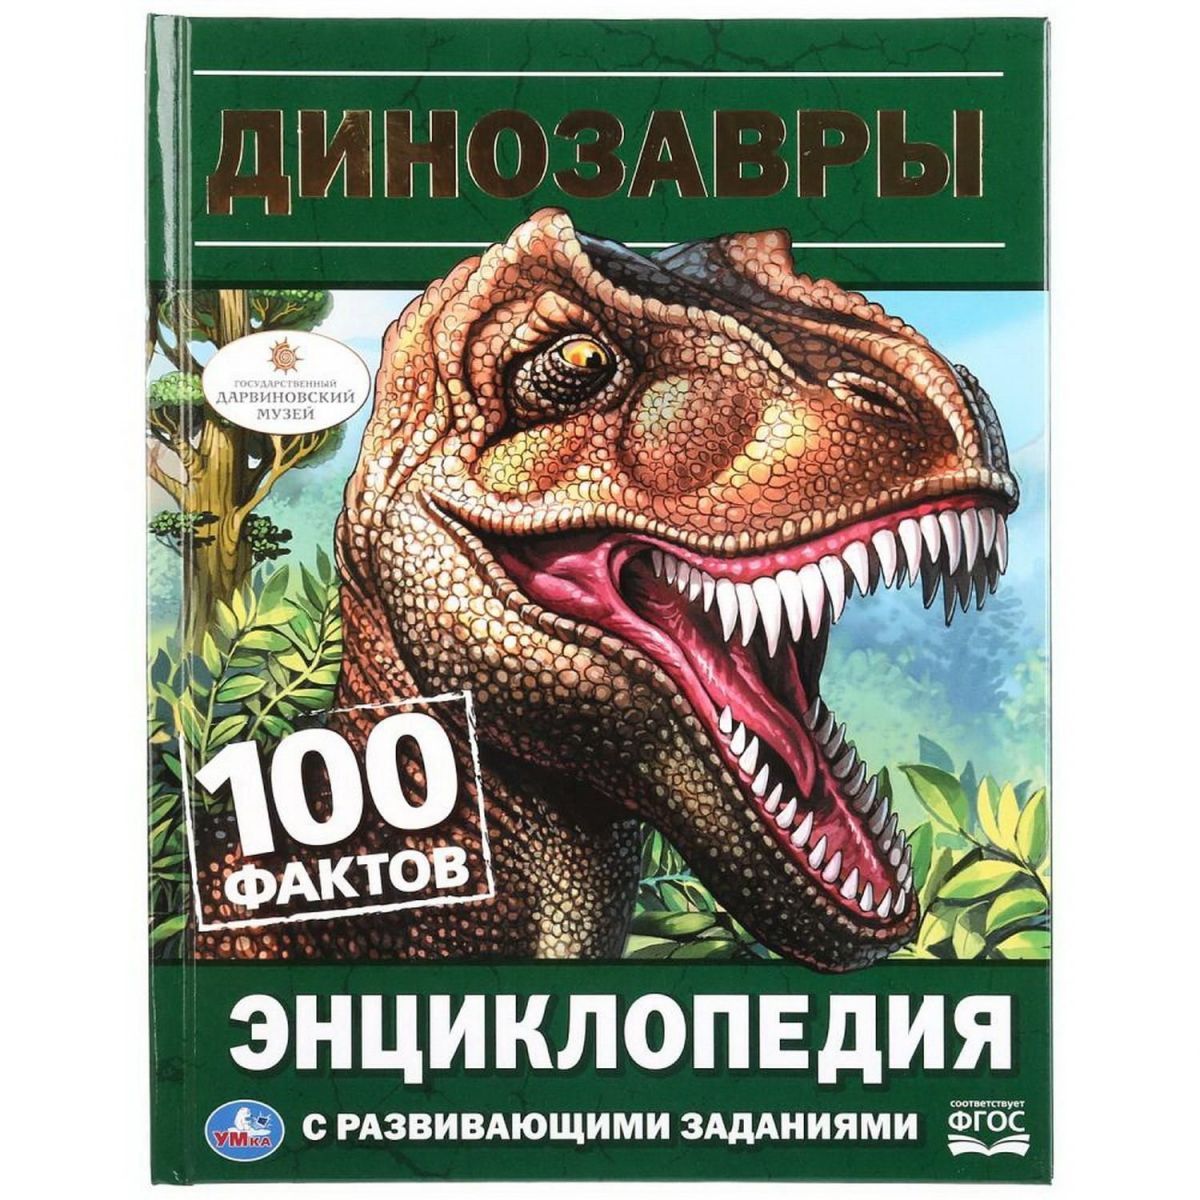 Книга УМка Динозавры (энциклопедия с развивающими заданиями а5)